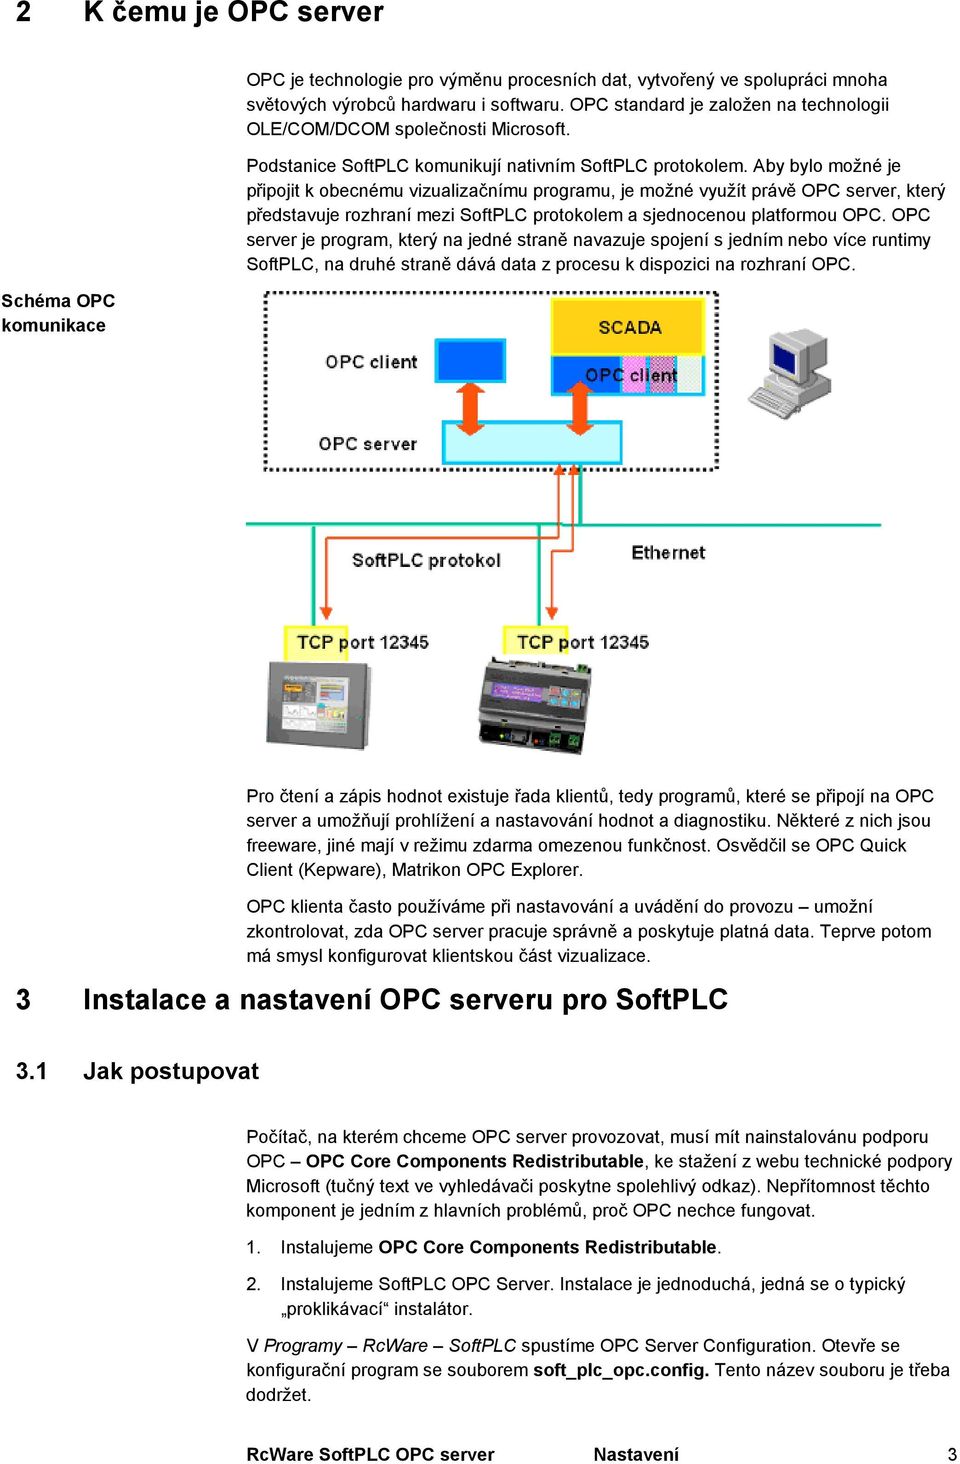 Aby bylo možné je připojit k obecnému vizualizačnímu programu, je možné využít právě OPC server, který představuje rozhraní mezi SoftPLC protokolem a sjednocenou platformou OPC.